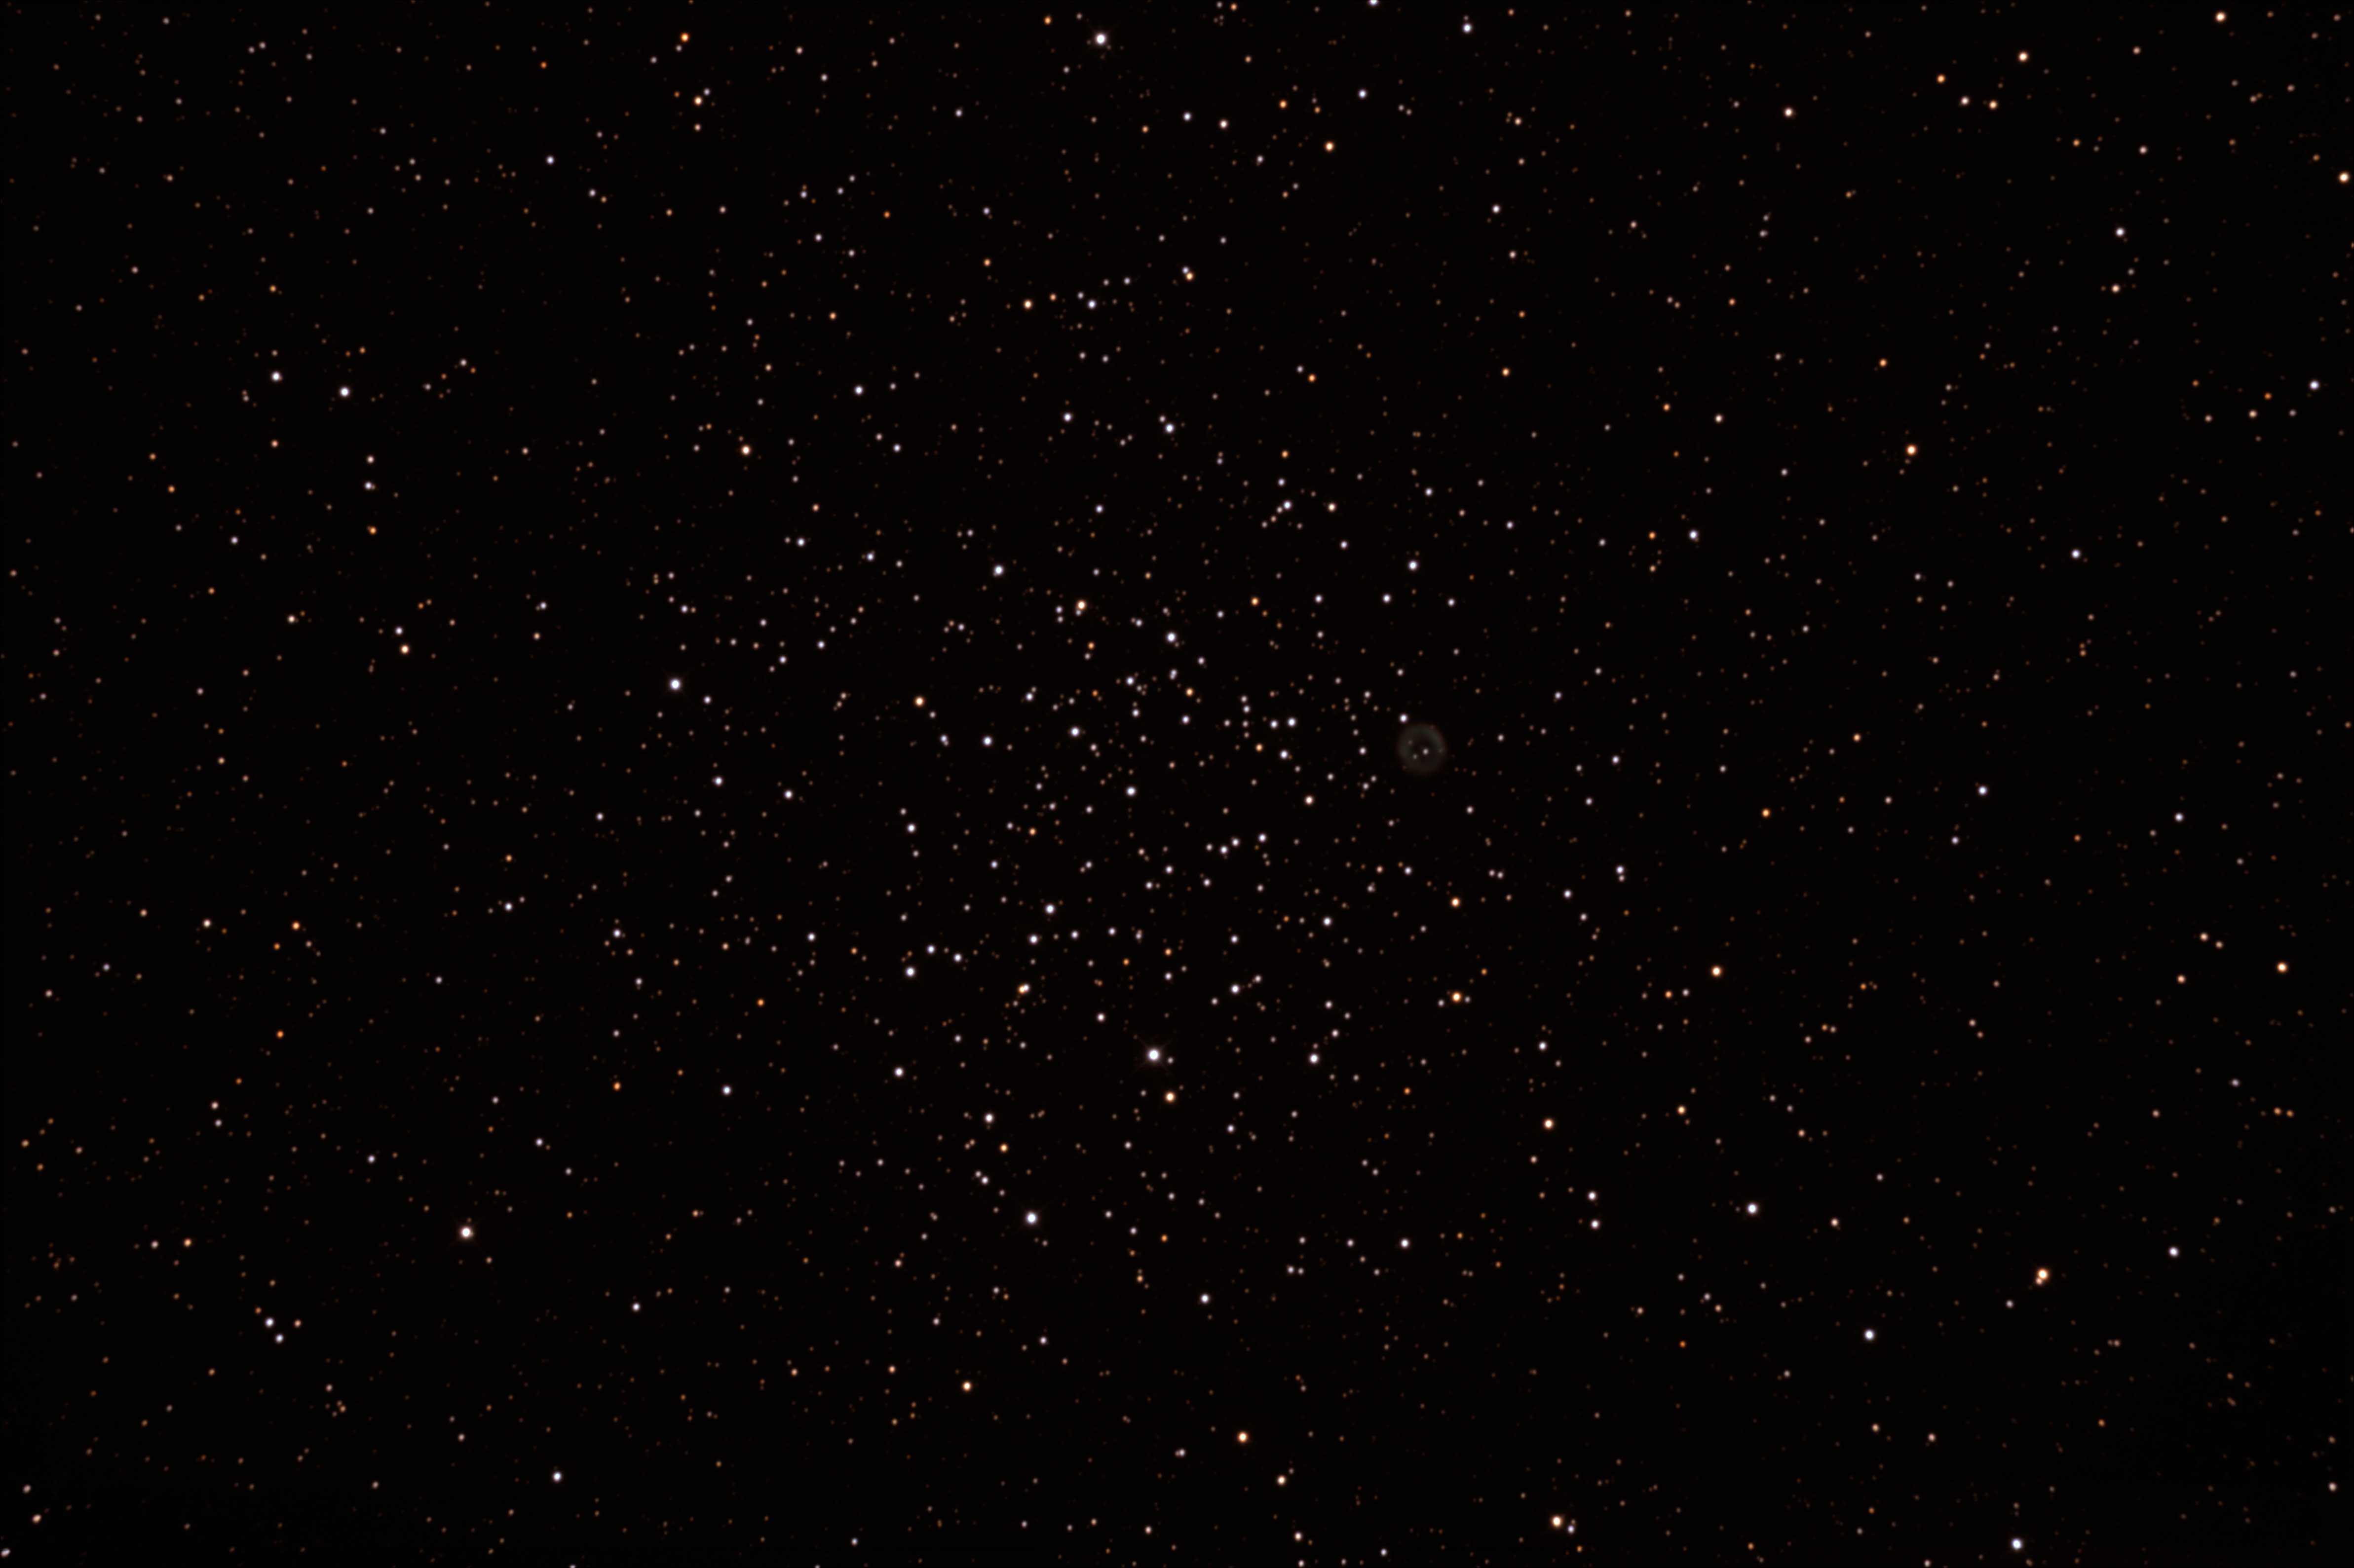 M46 (NGC 2437)